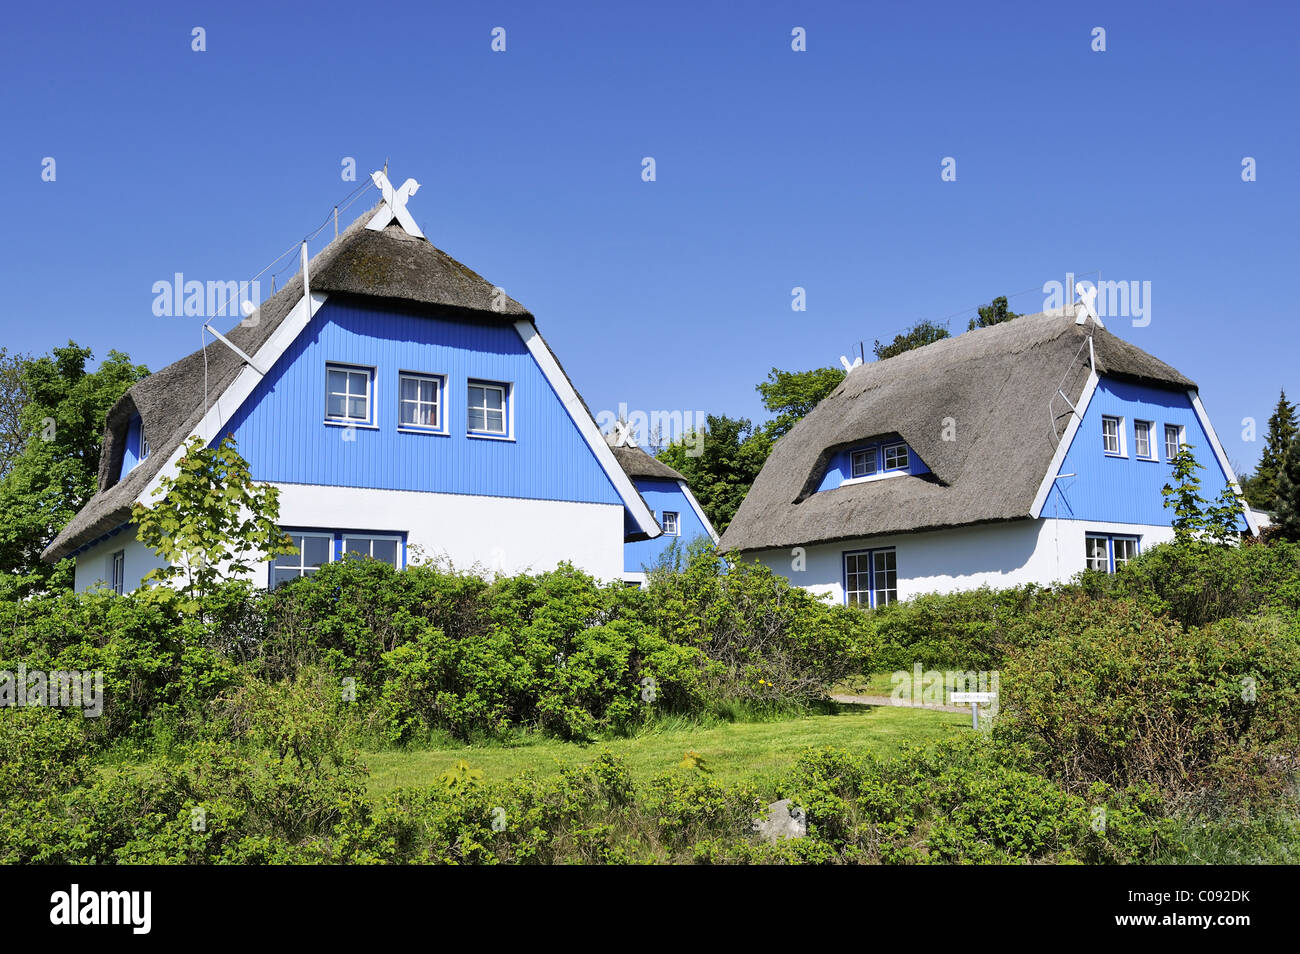 Un toit traditionnel en chaume maison de vacances sur l'île de Hiddensee, district de Rügen, Mecklembourg-Poméranie-Occidentale, Allemagne, Europa Banque D'Images